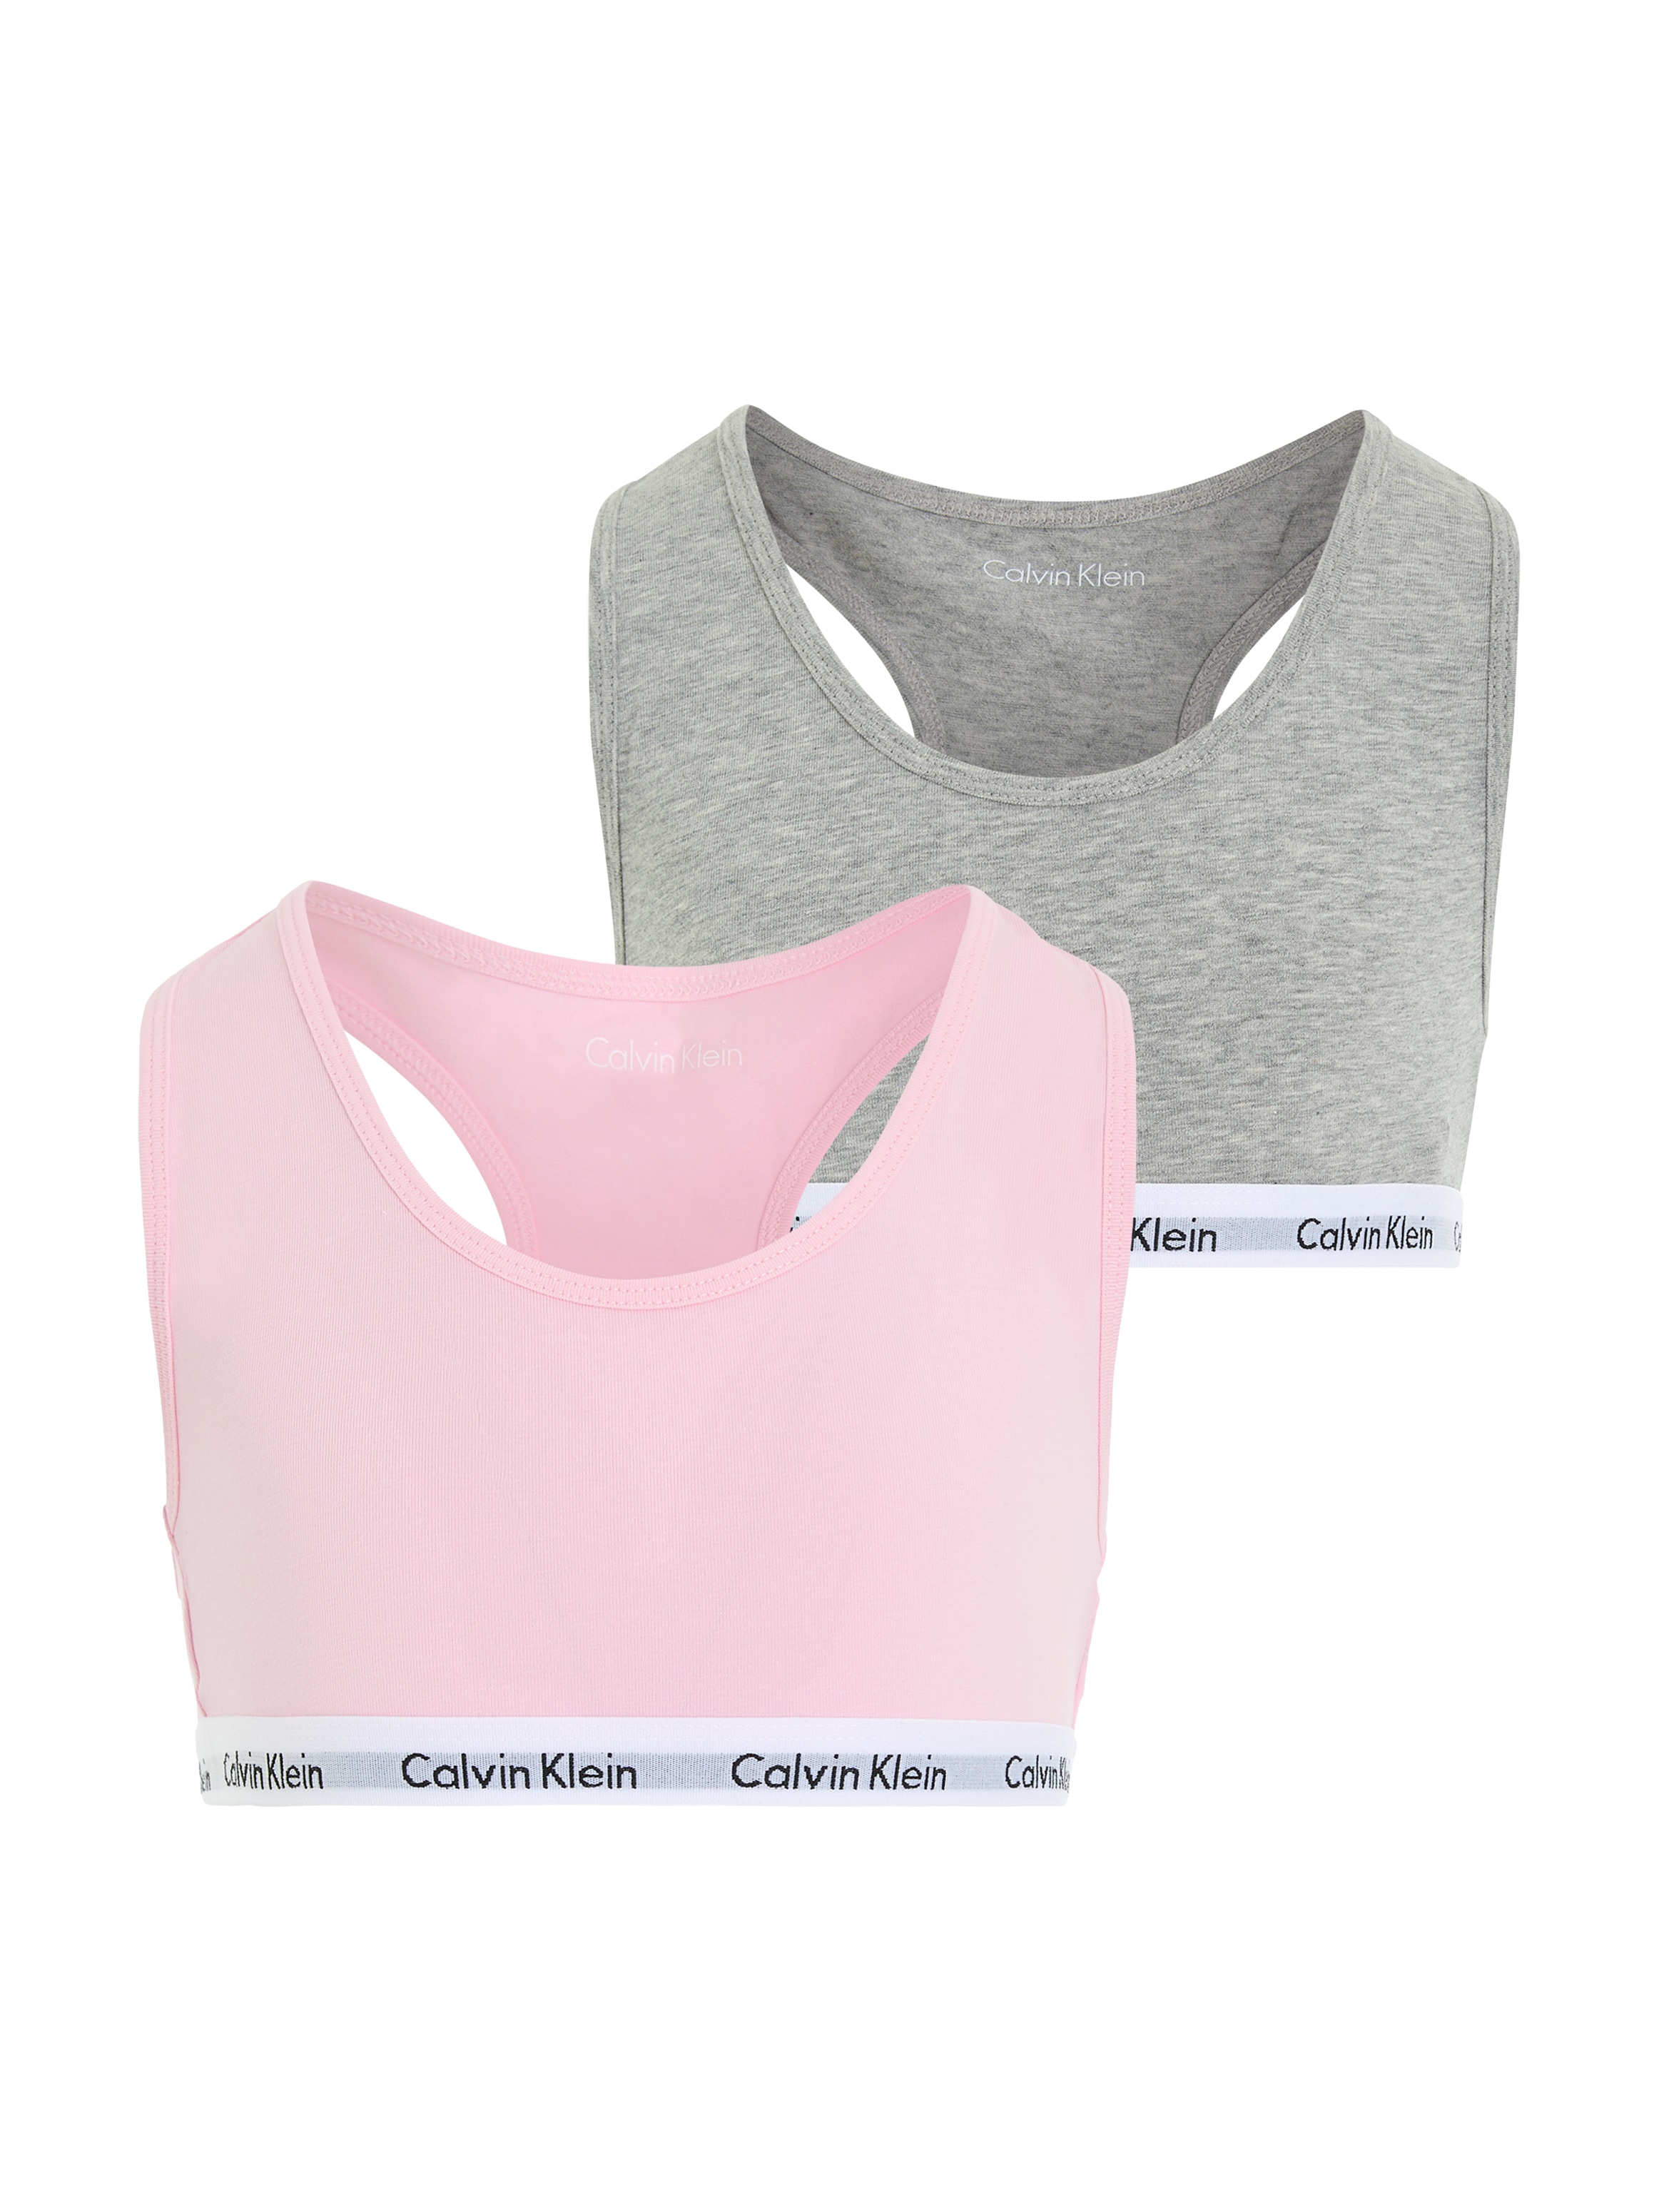 Calvin Klein Underwear Bustier, (2 Stück), Mädchen - mit Logobund